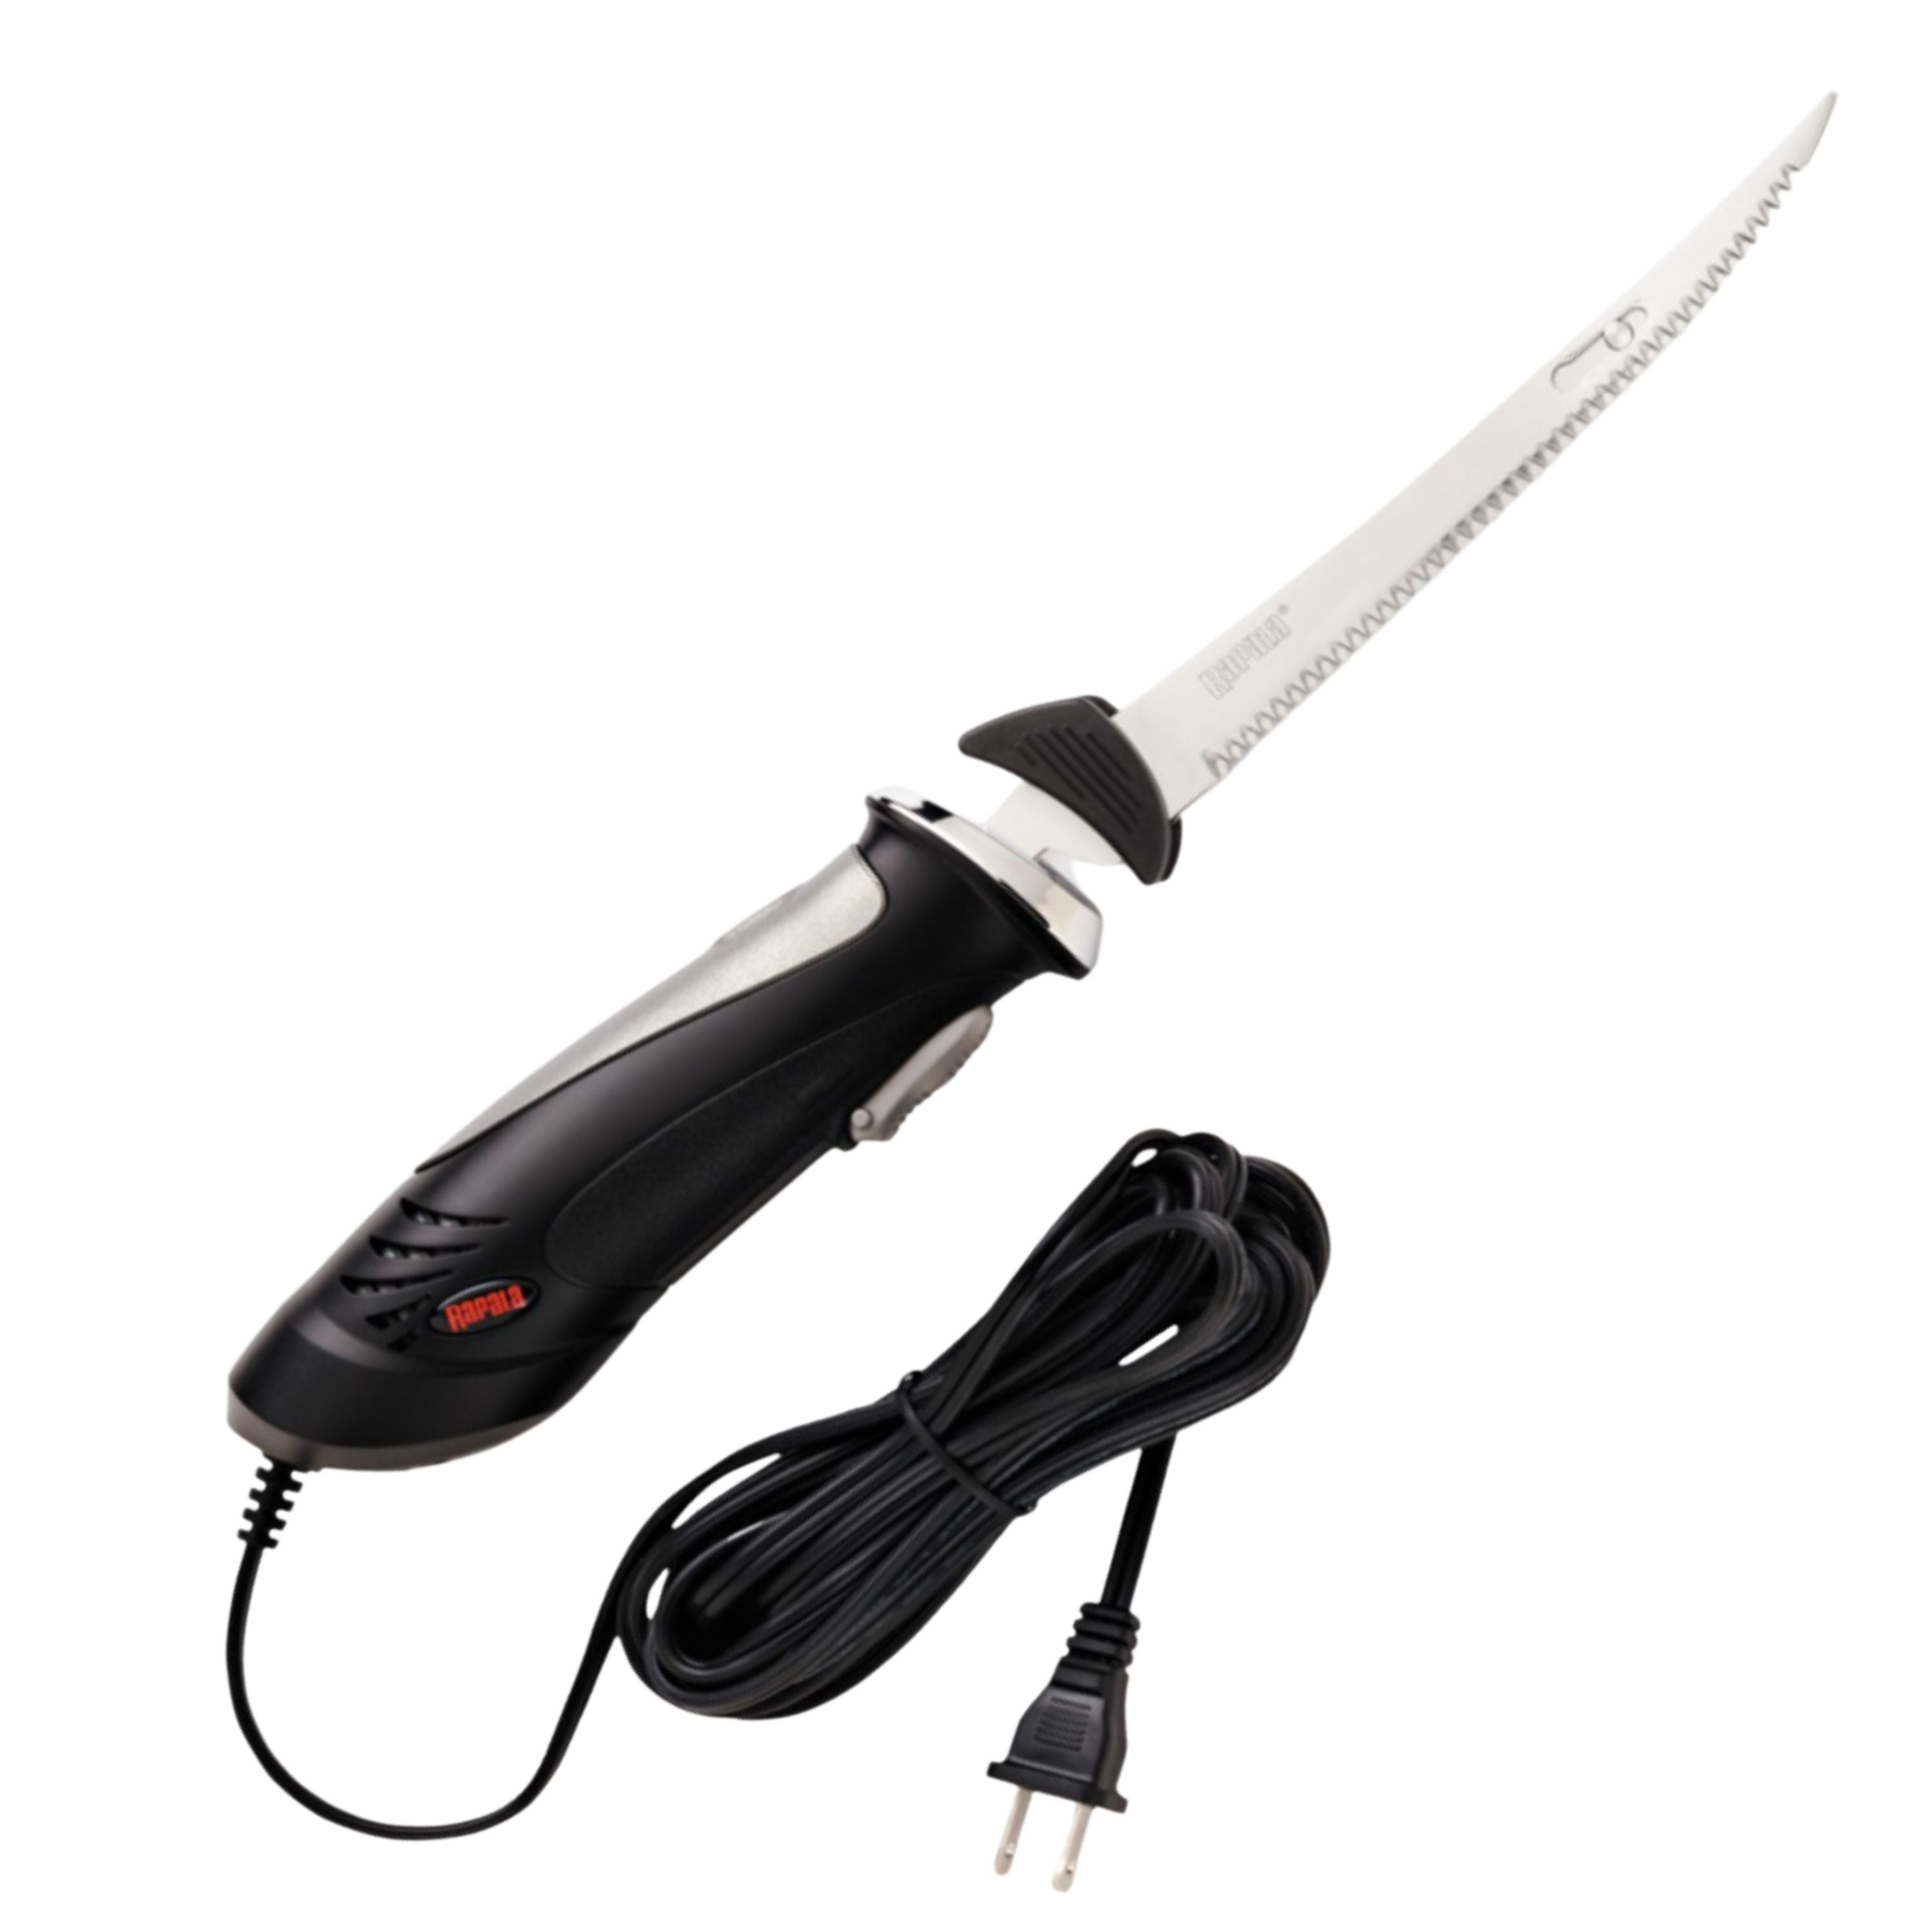 Electric fillet knife set - 110 V